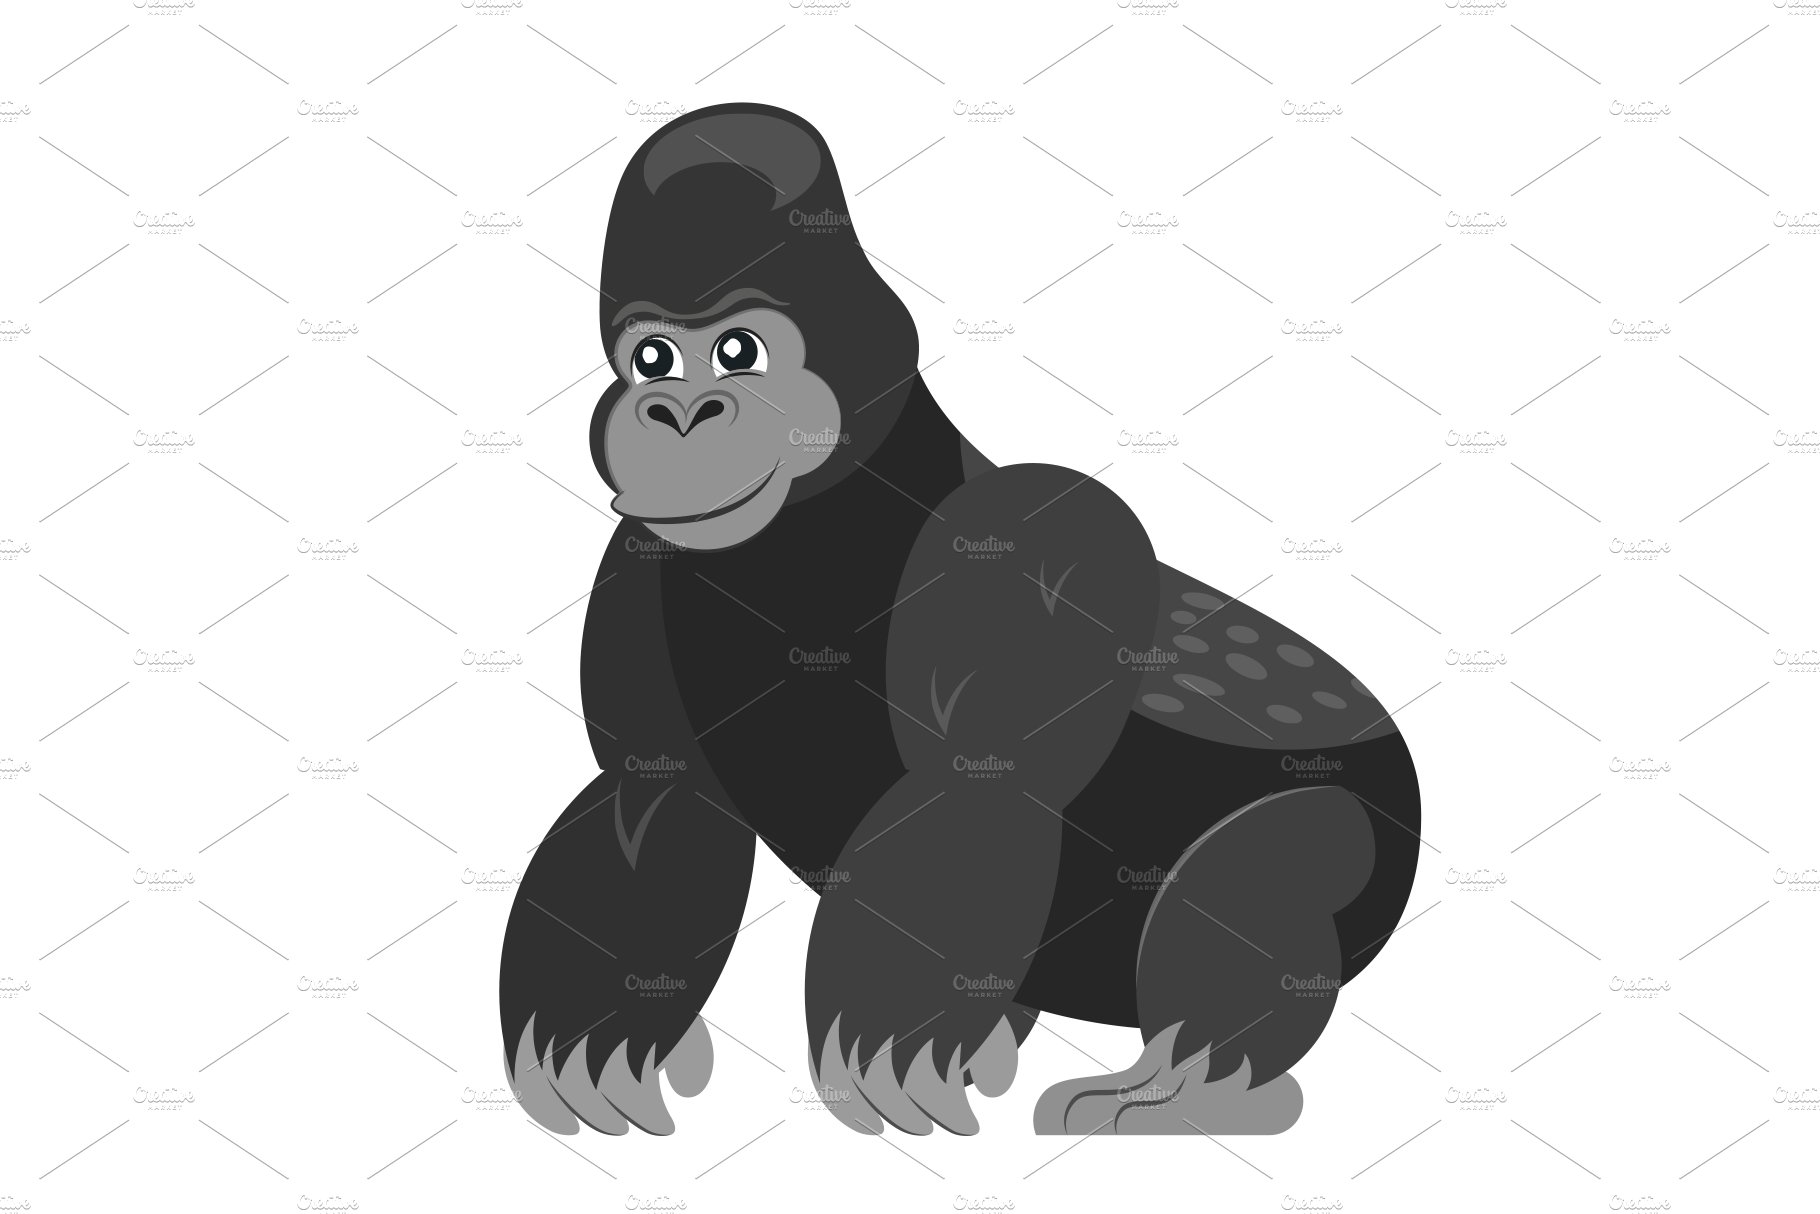 Cute gorilla cover image.